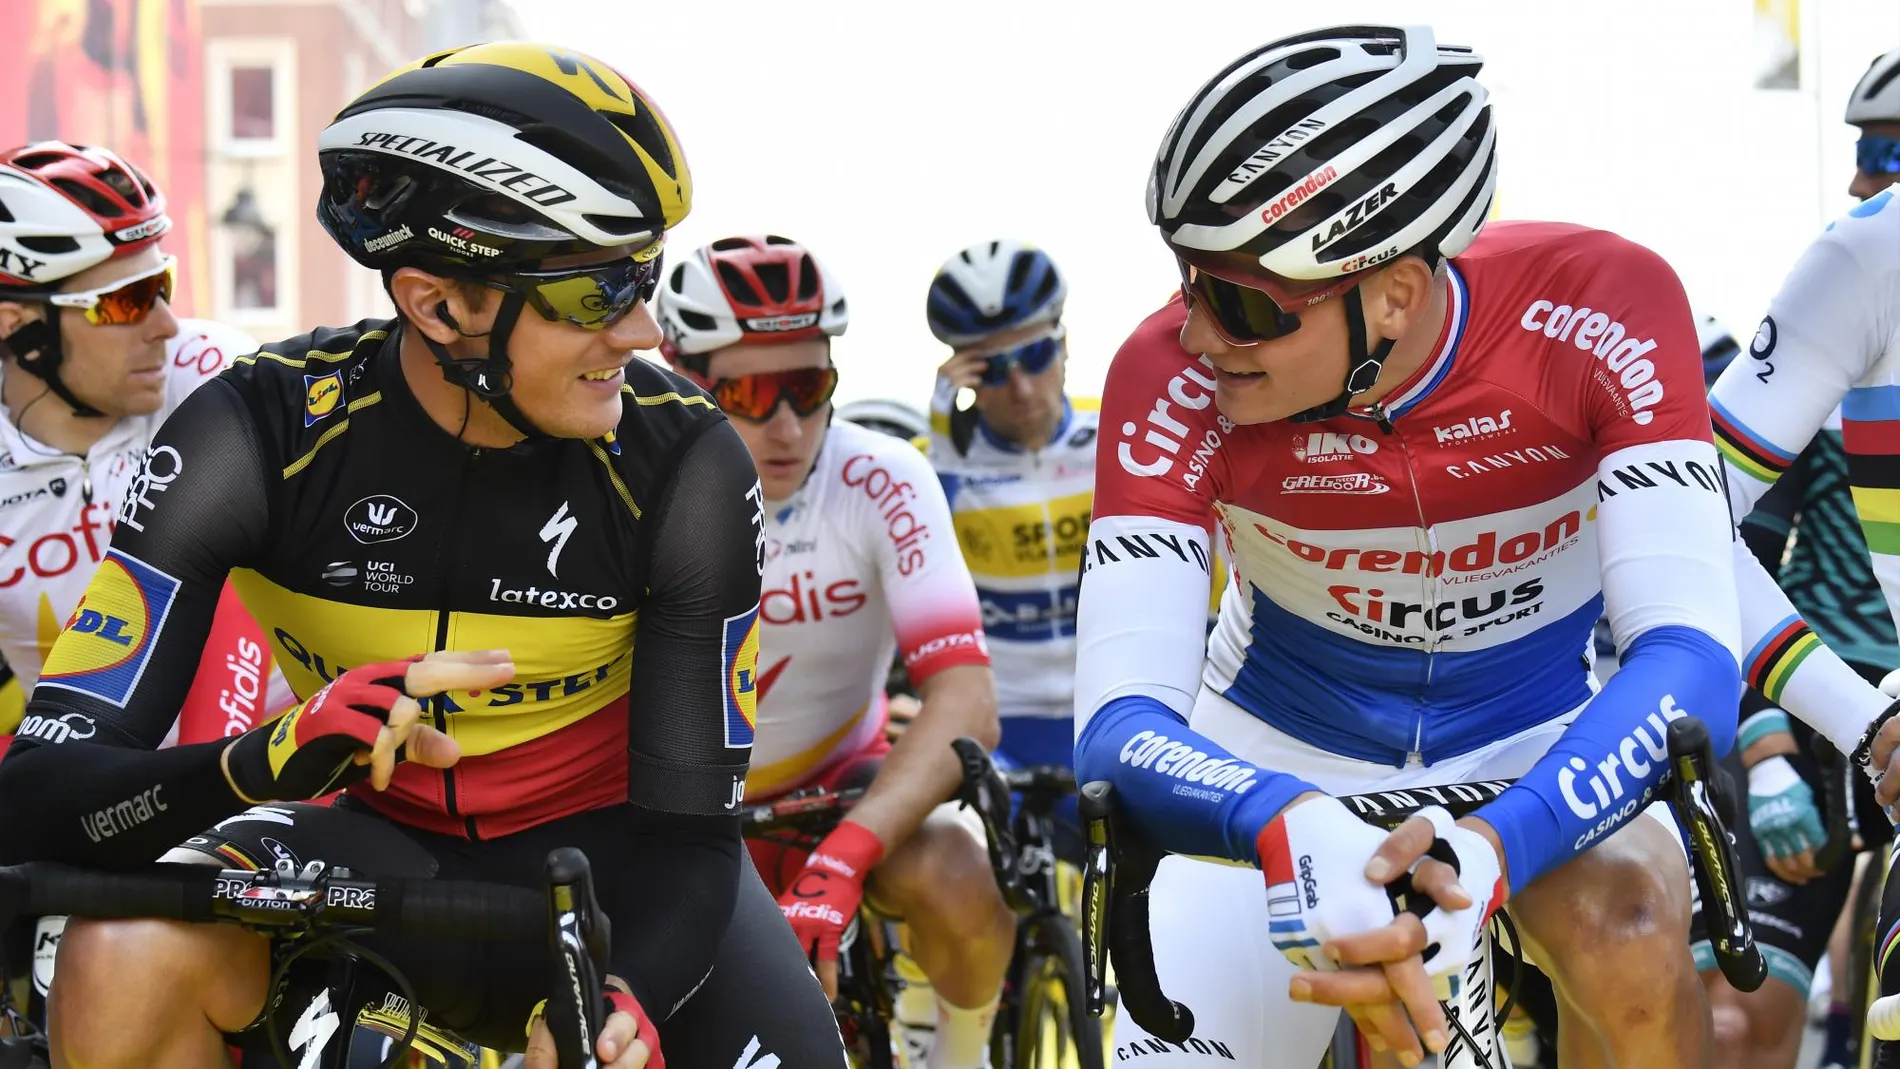 Van der Poel conversa con el campeón de Bélgica, Lampaert, antes de la carrera